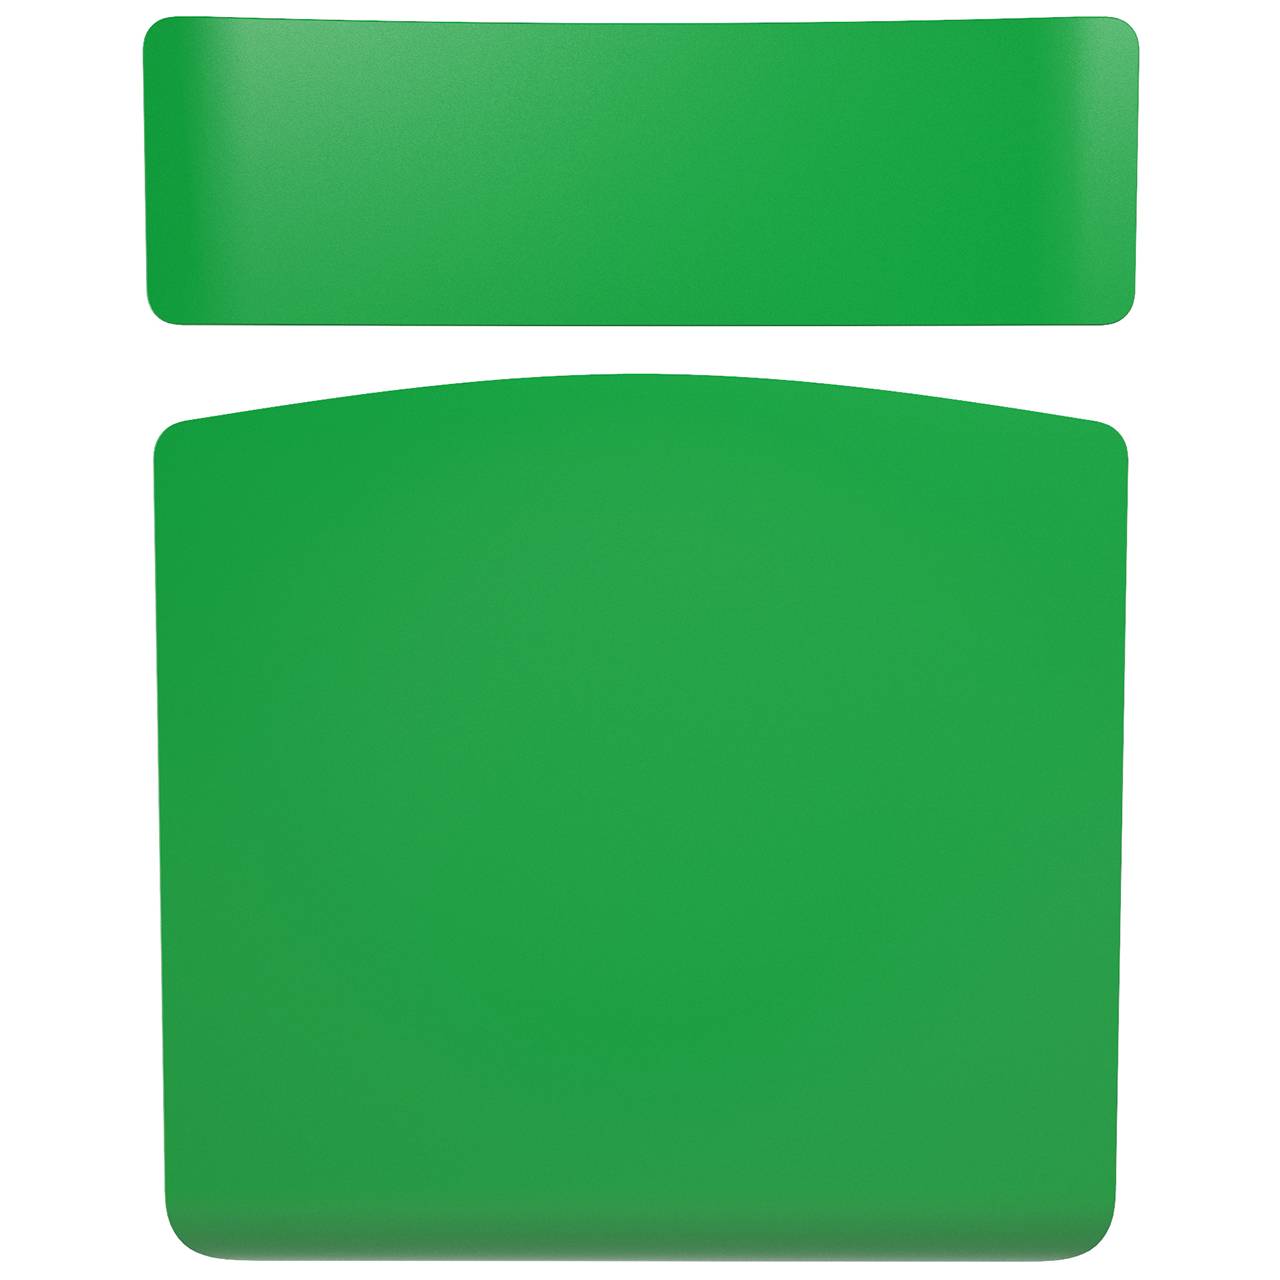 Стул ученический регулируемый гр. 3-5, 4-6 или 5-7 серый Зеленый 4-6 плоскоовальная